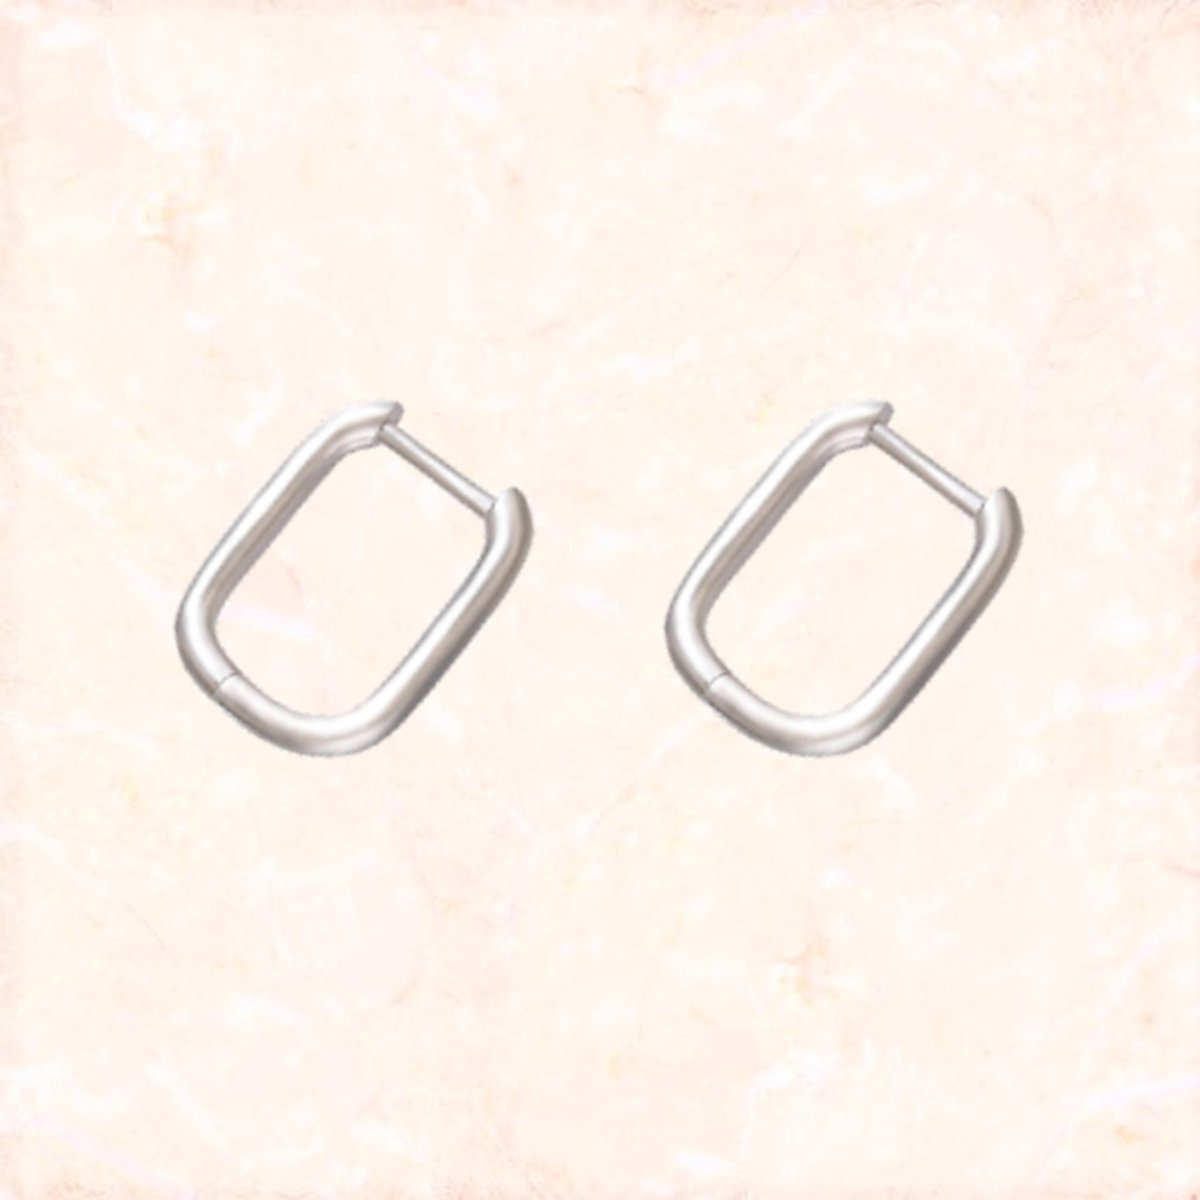 Jobo By JET - Wish earrings - XXS - Silver - Mini oorbellen in zilverkleurig